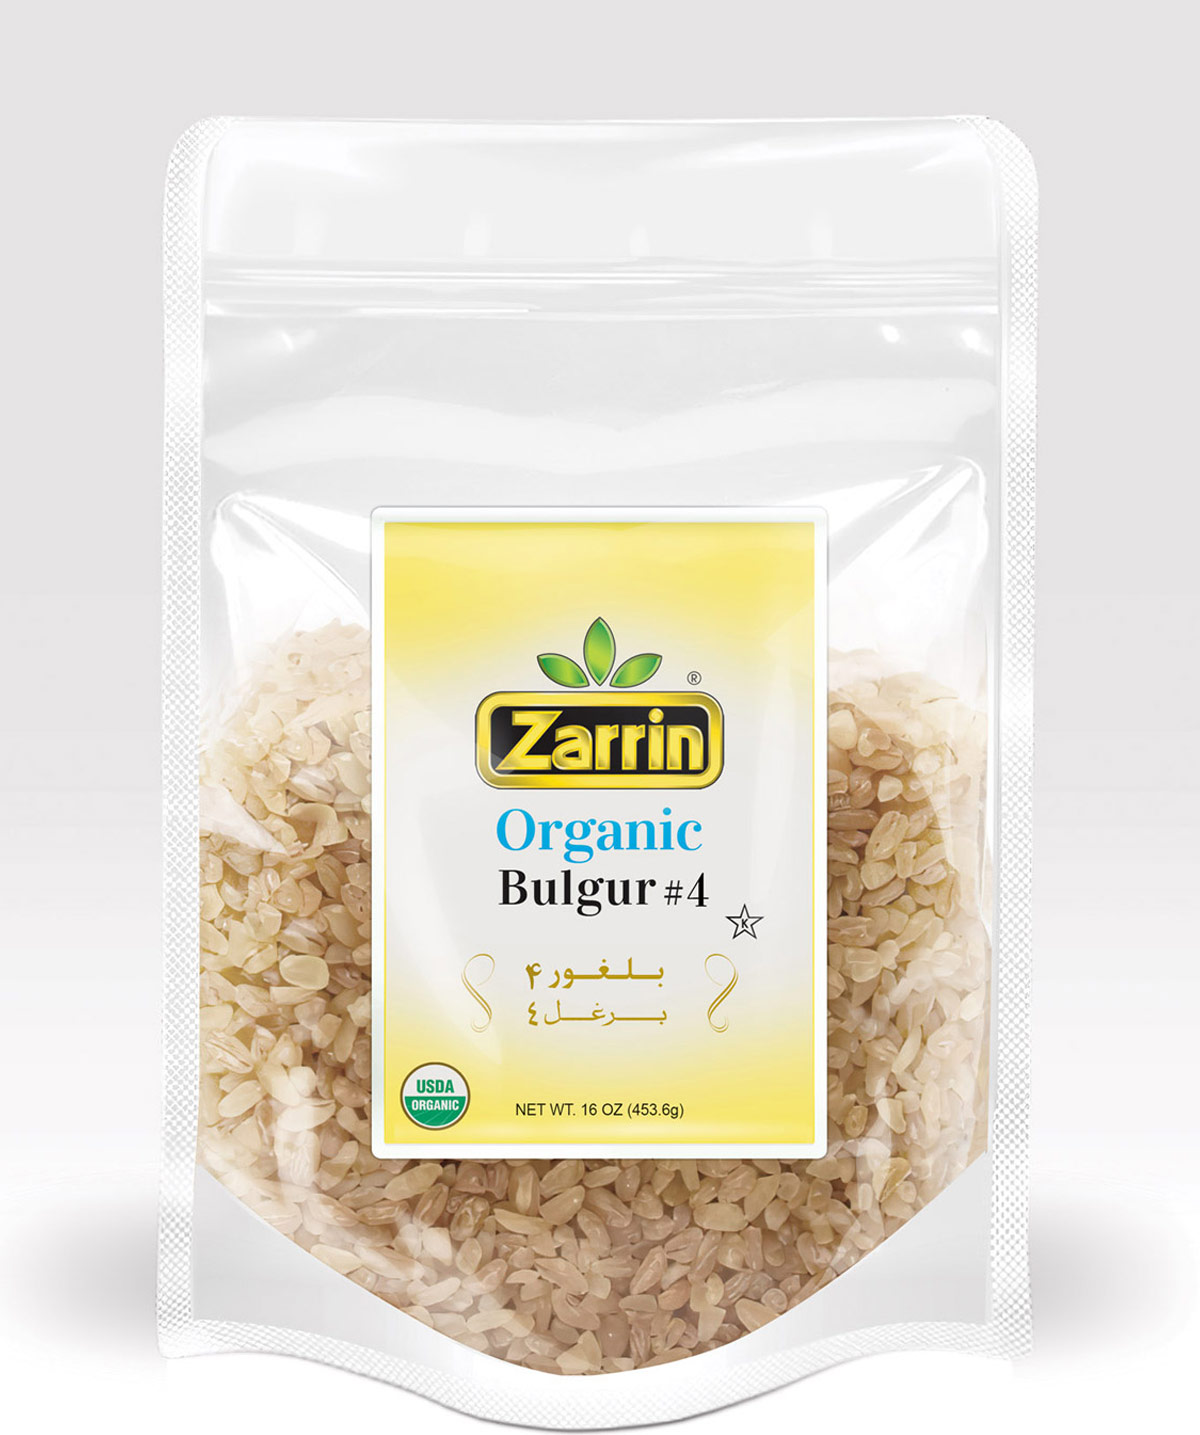 Zarrin Organic Bulgur #4